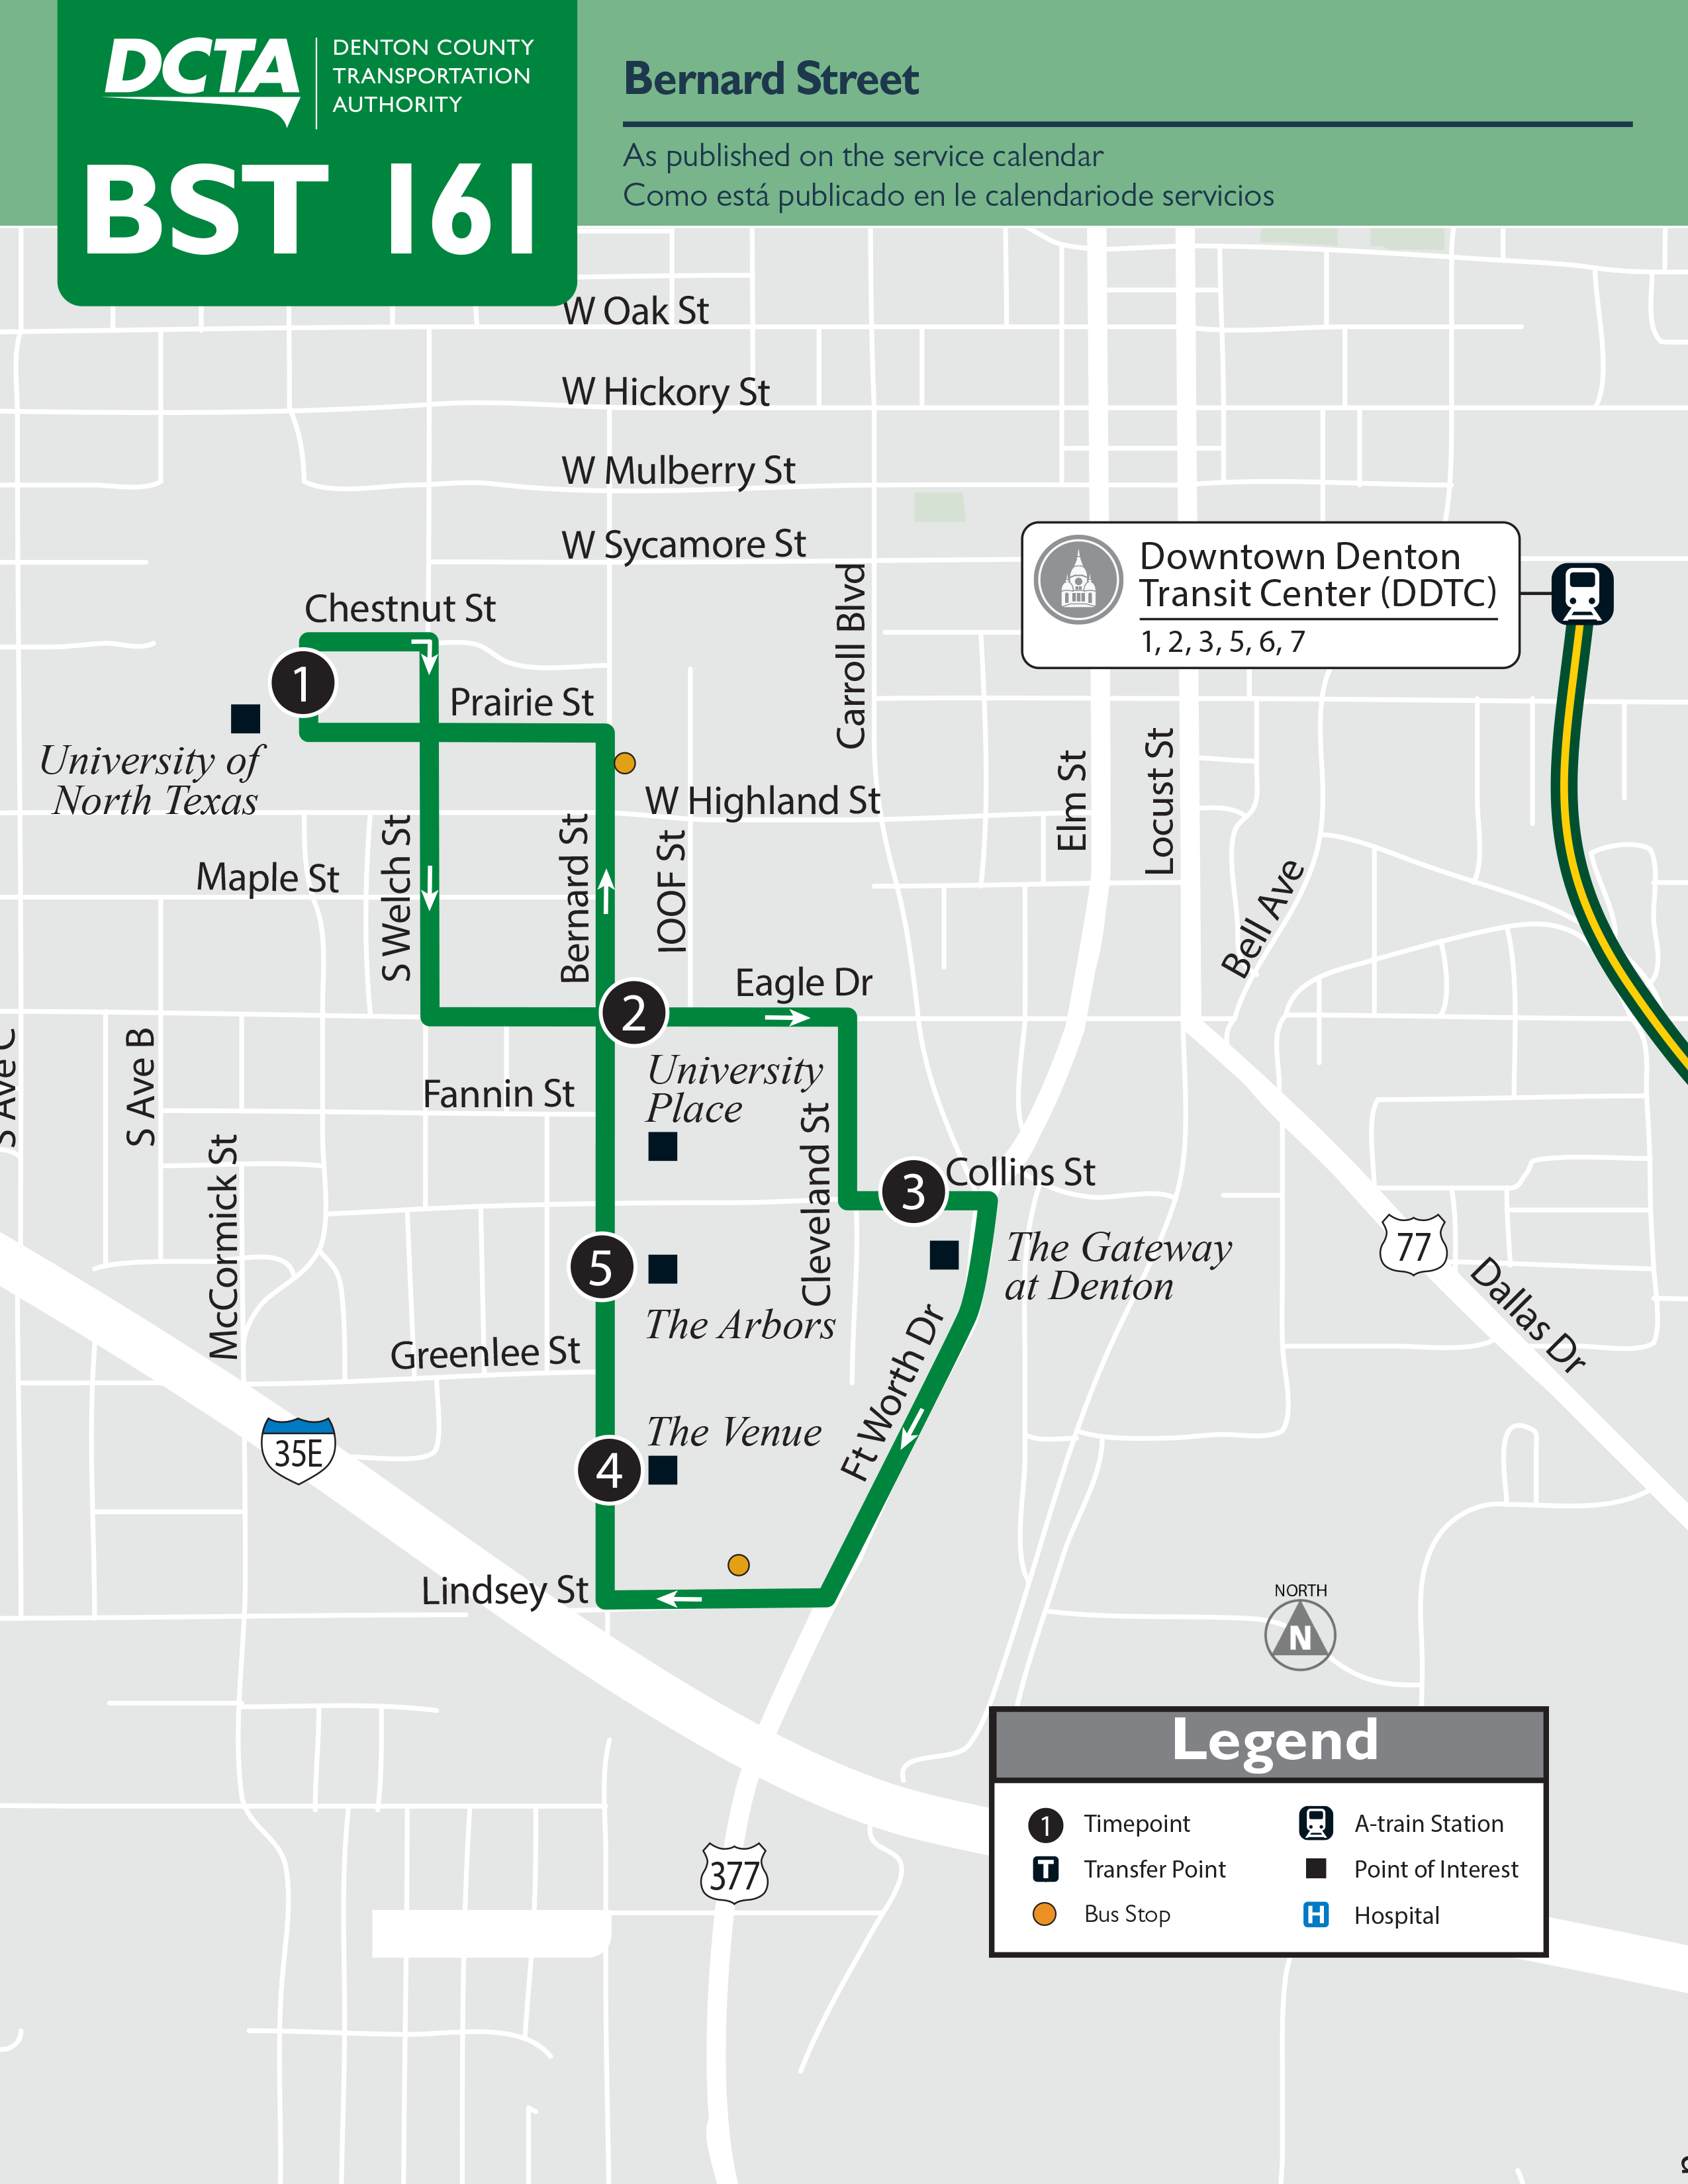 Bernard Street Route 161 Map